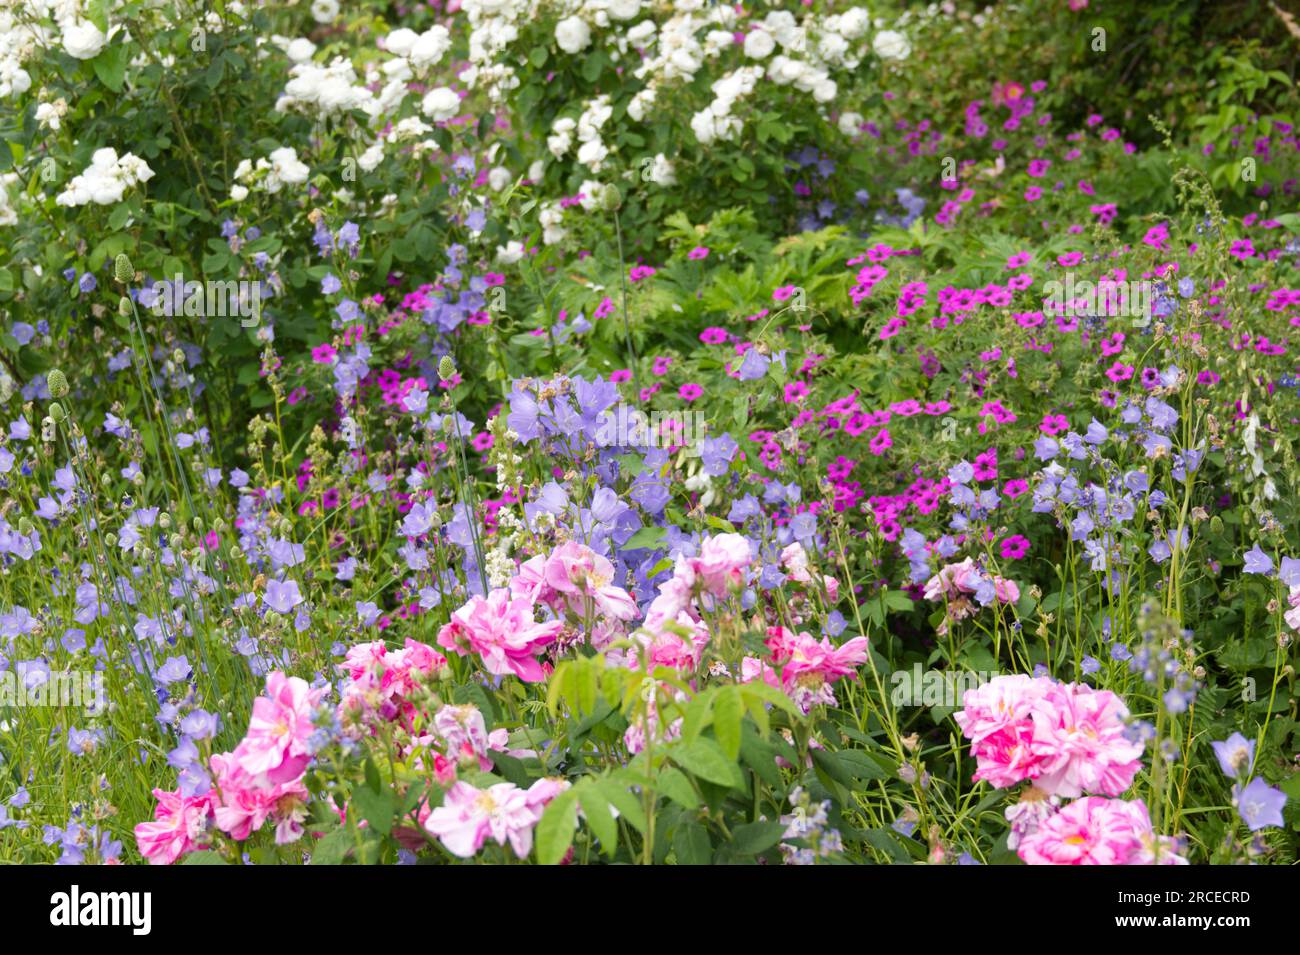 Belle bordure de jardin d'été avec de vieilles roses, y compris Rosa Mundi, géraniums robustes, fleurs bleues campanula persicfolia UK juin Banque D'Images